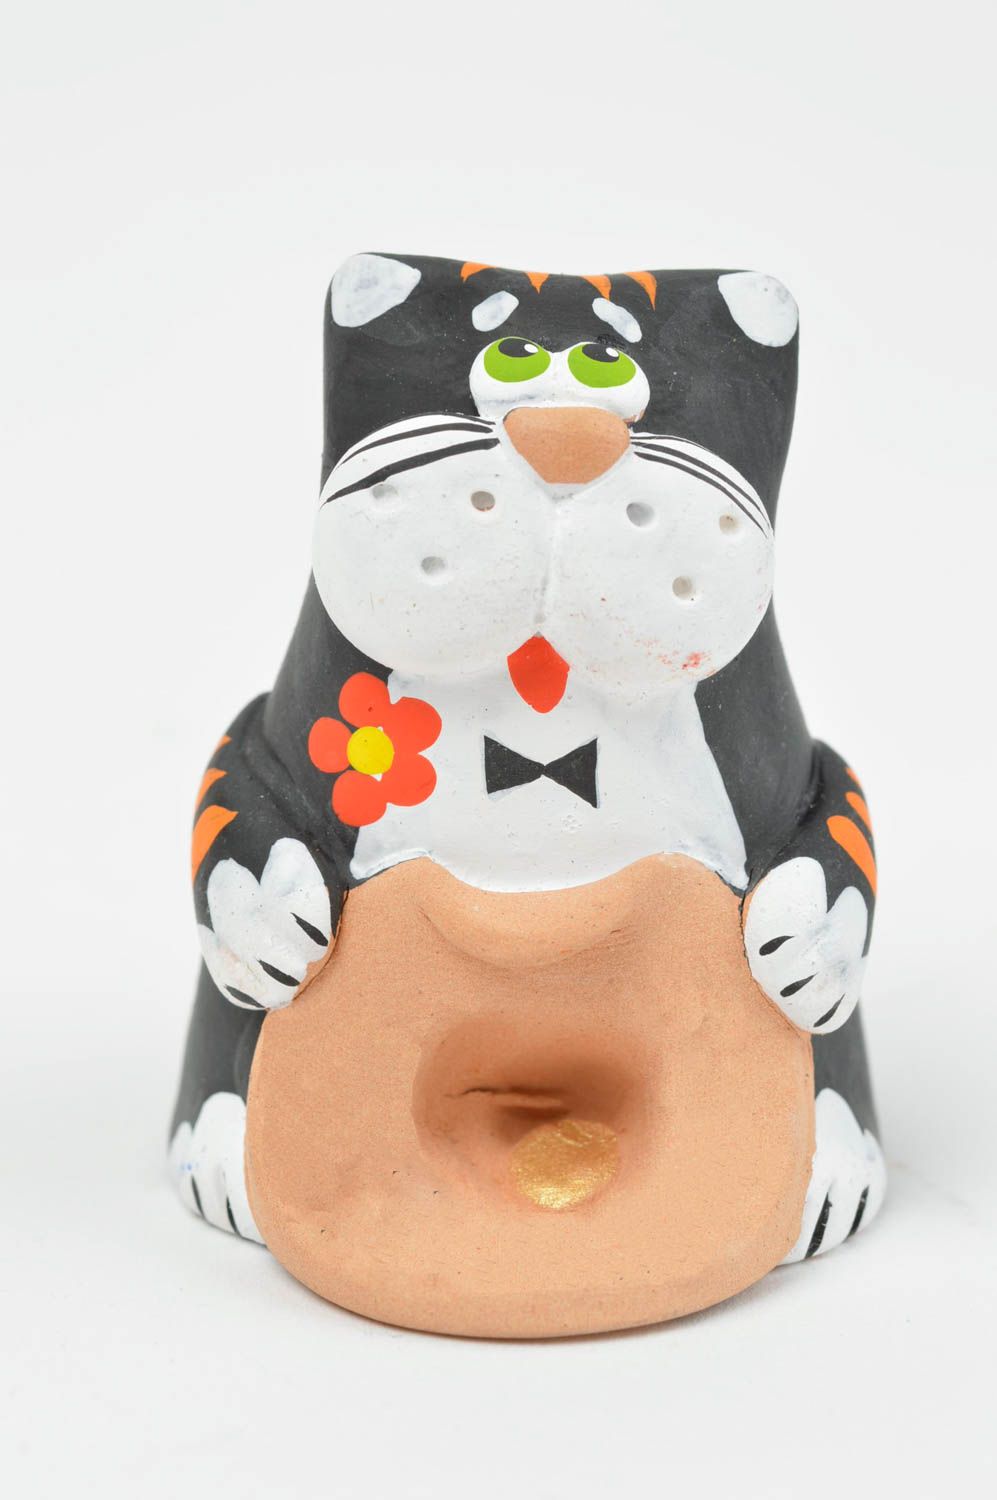 Lustige handgemachte grelle künstlerische Statuette aus Ton Katze mit Hut bemalt foto 3